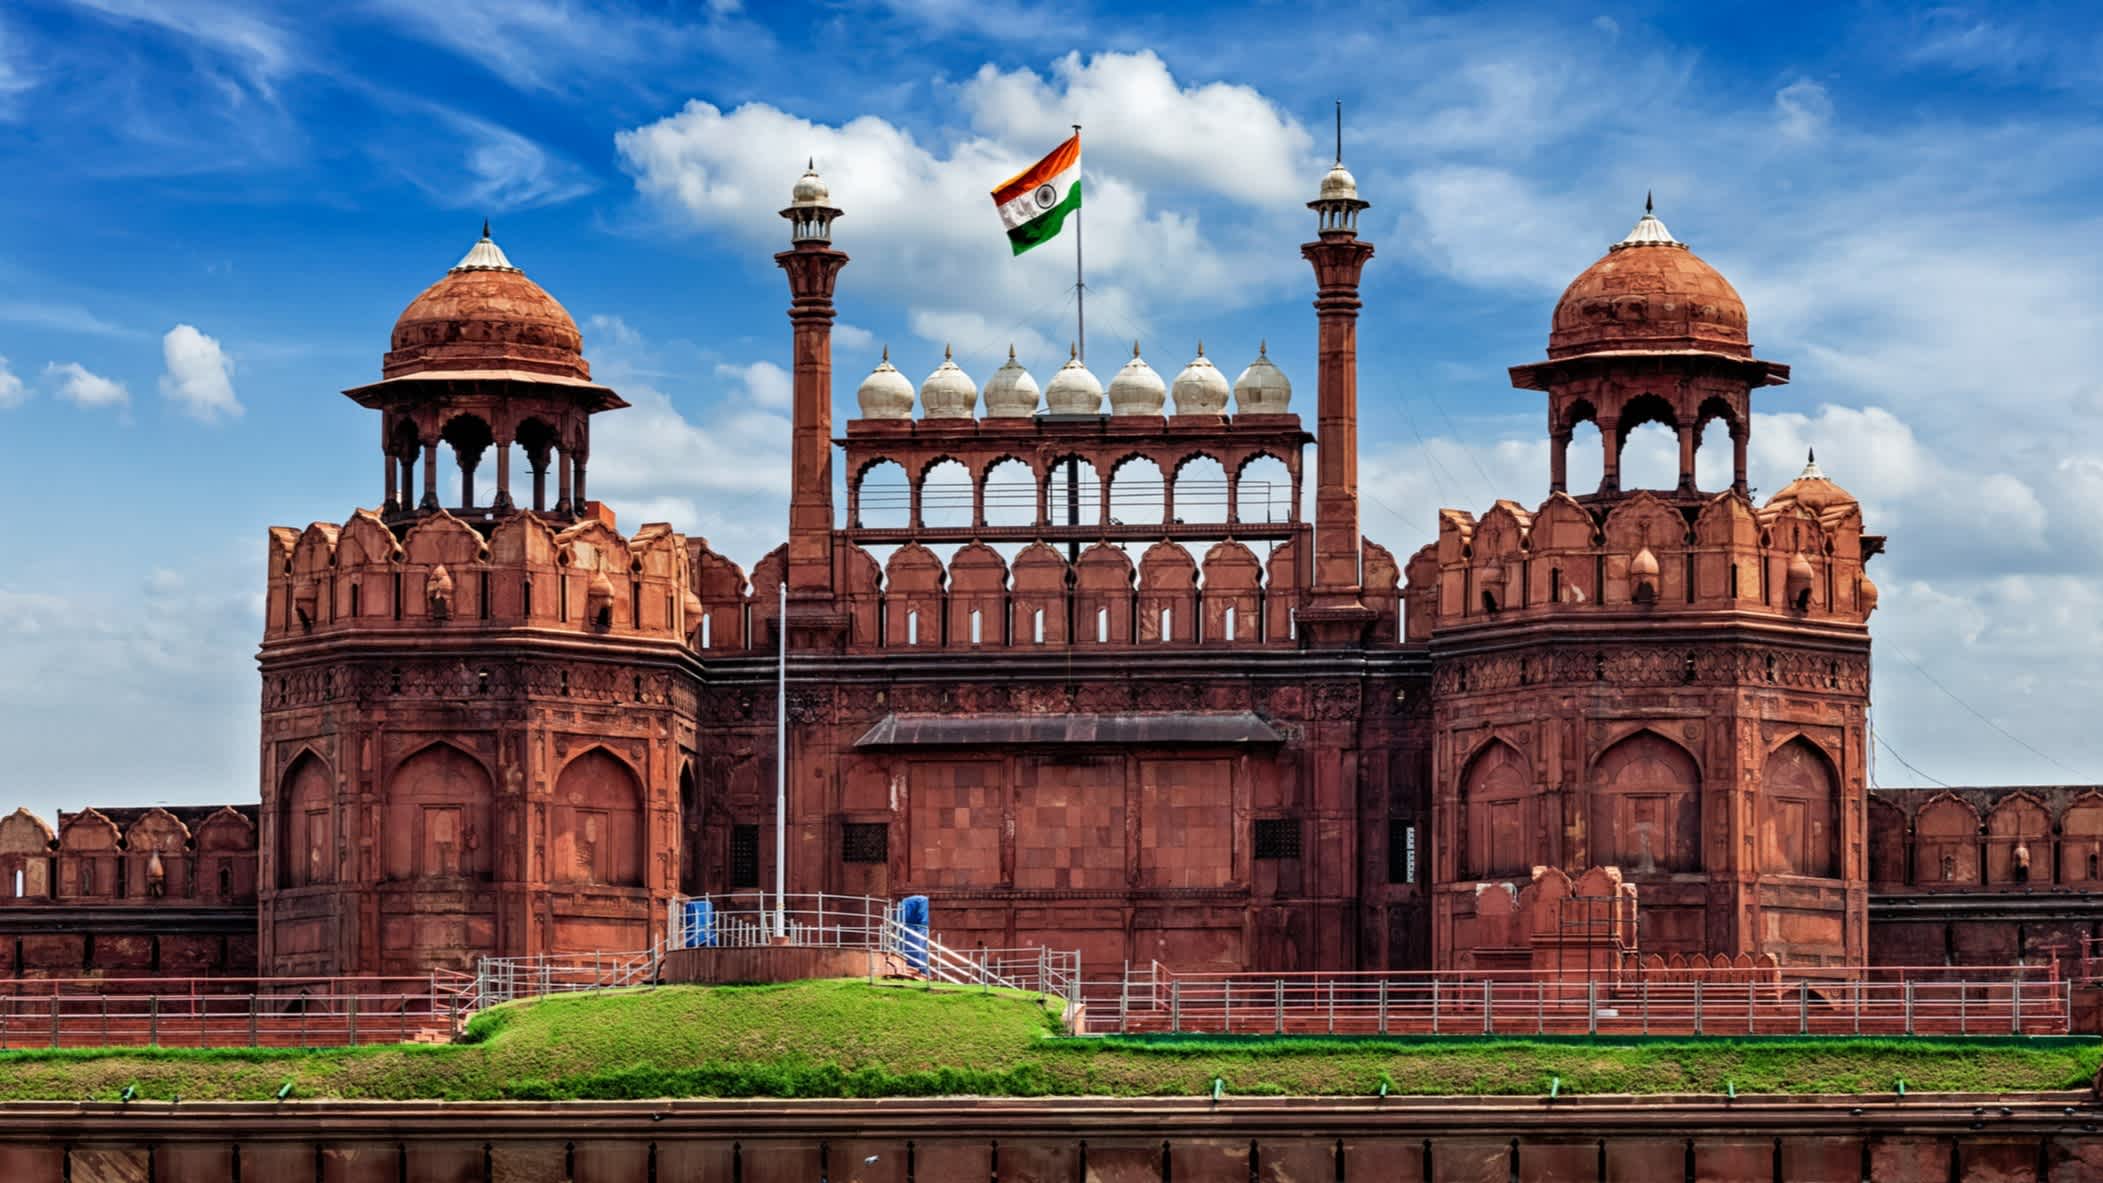 Blick auf das Rote Fort Lal Qila mit Indischer Flagge in Delhi, Indien